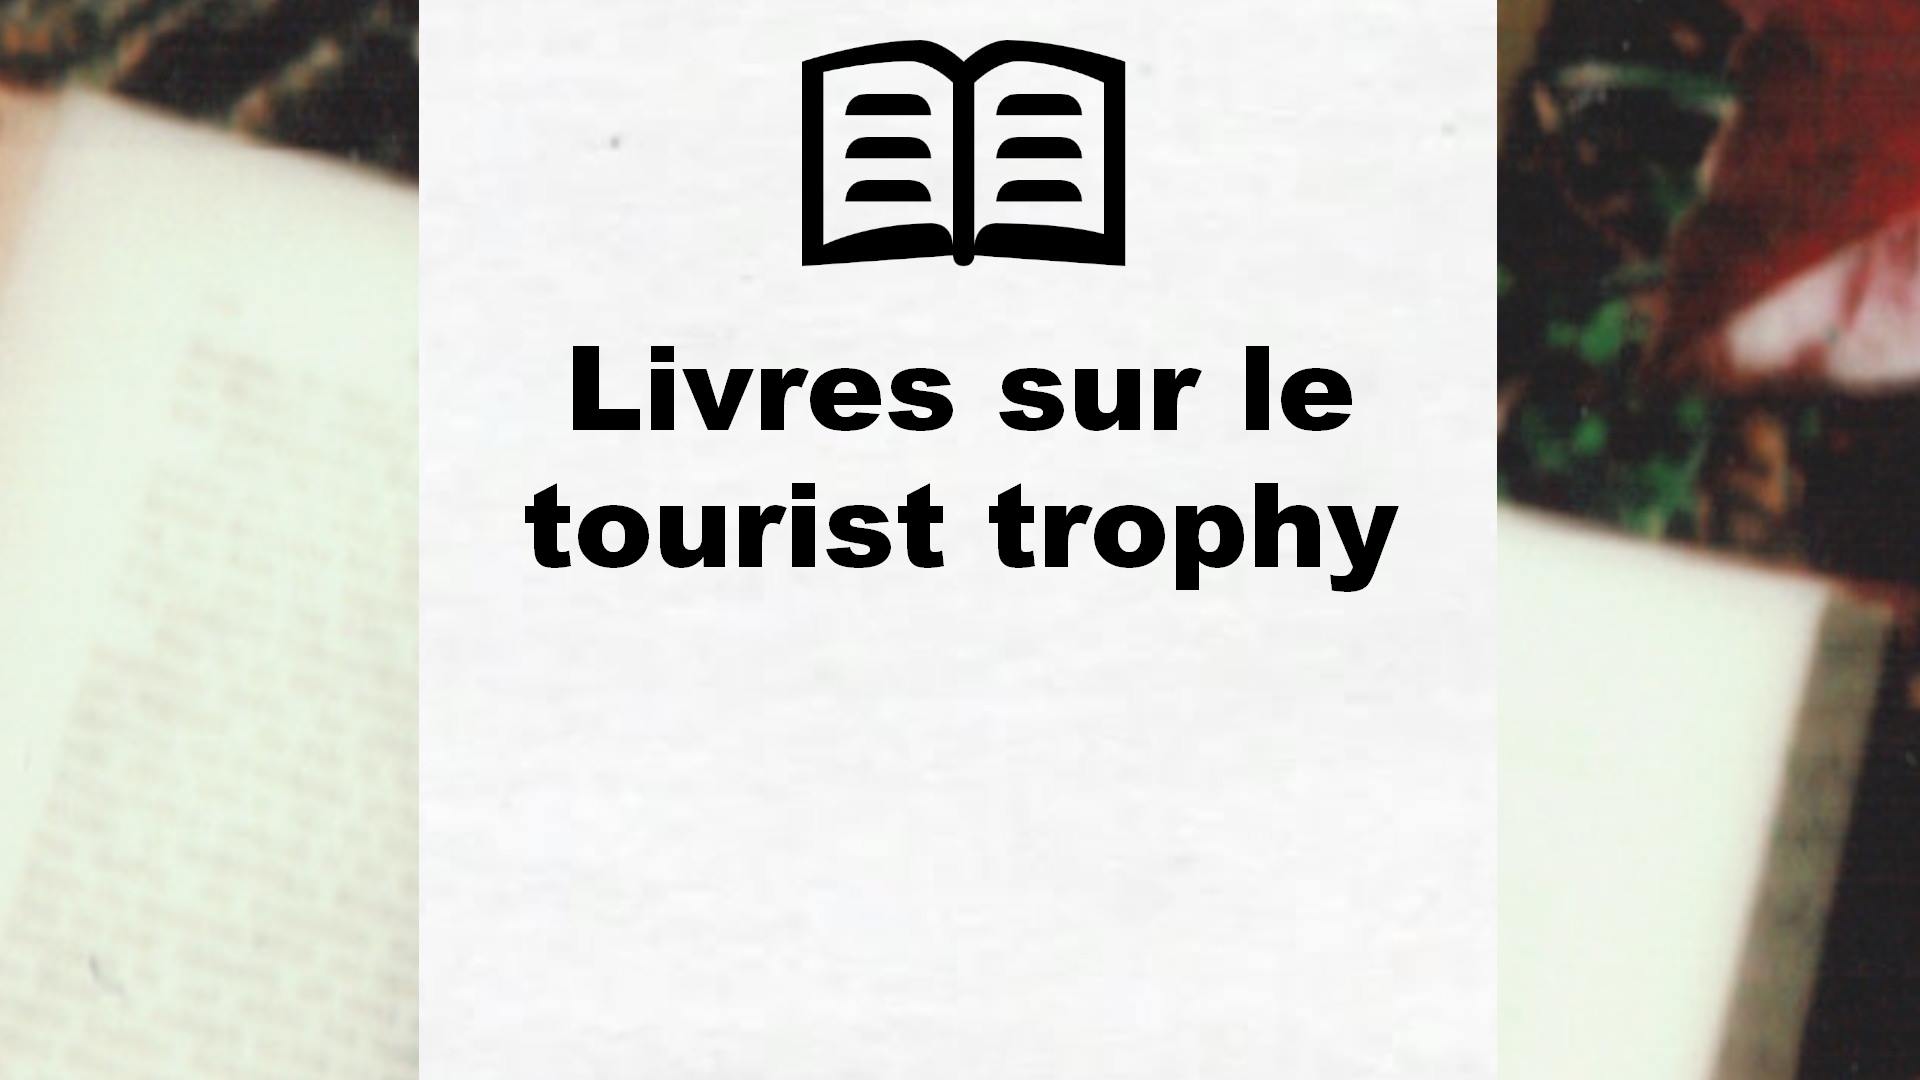 Livres sur le tourist trophy